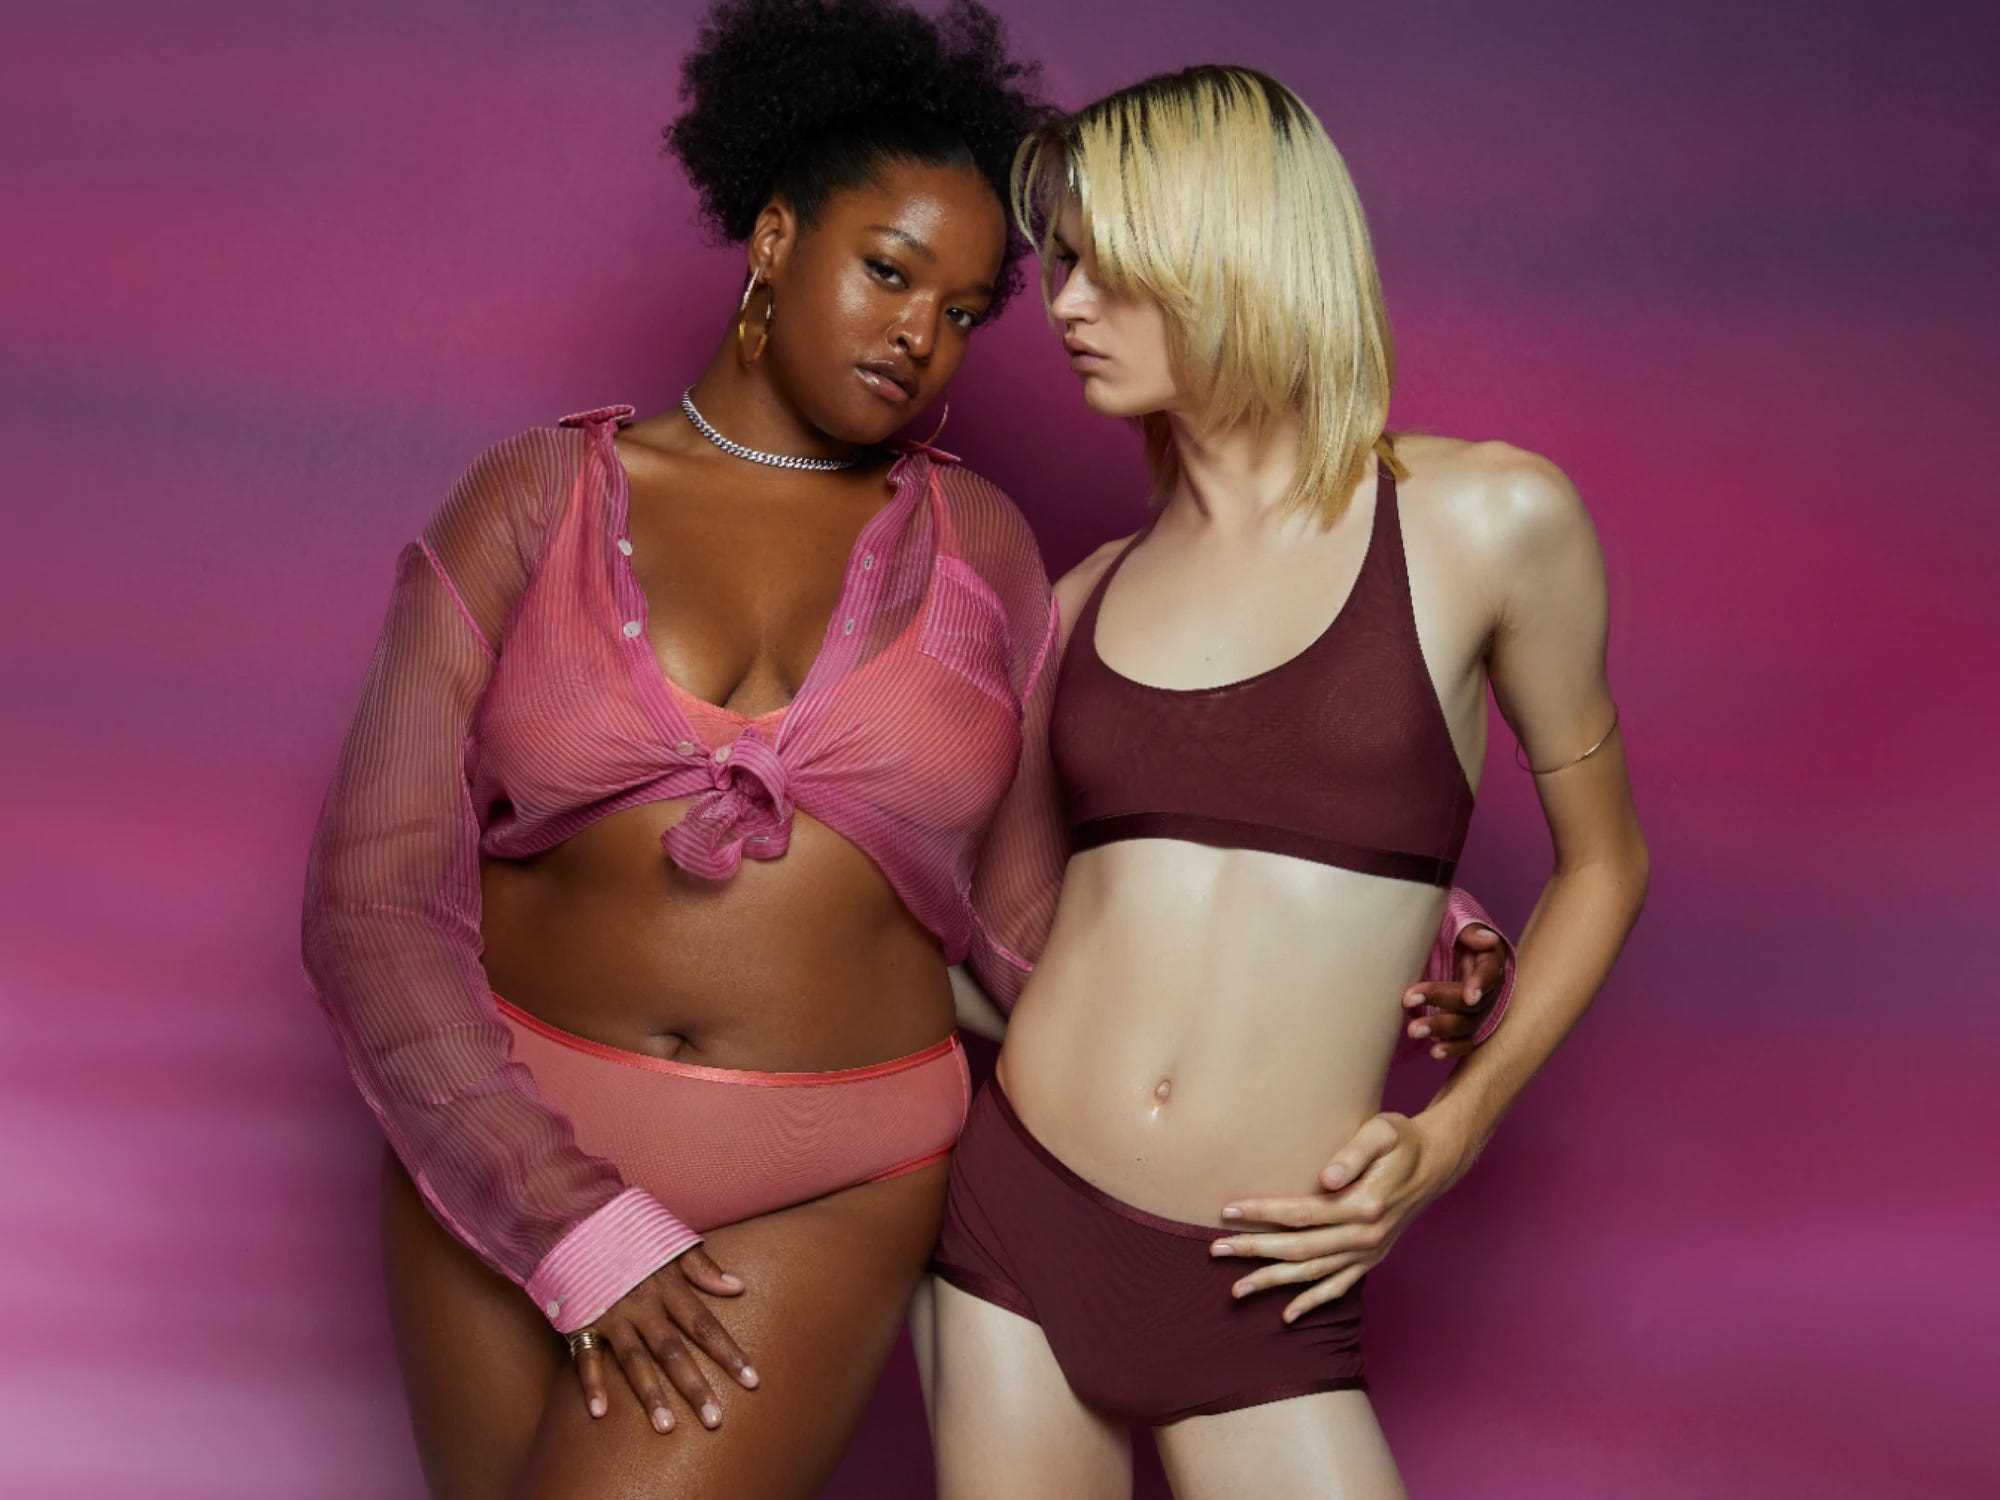 Zwei Models stehen vor einem violetten Hintergrund in rosa und kastanienbraunen Parade-Dessous.